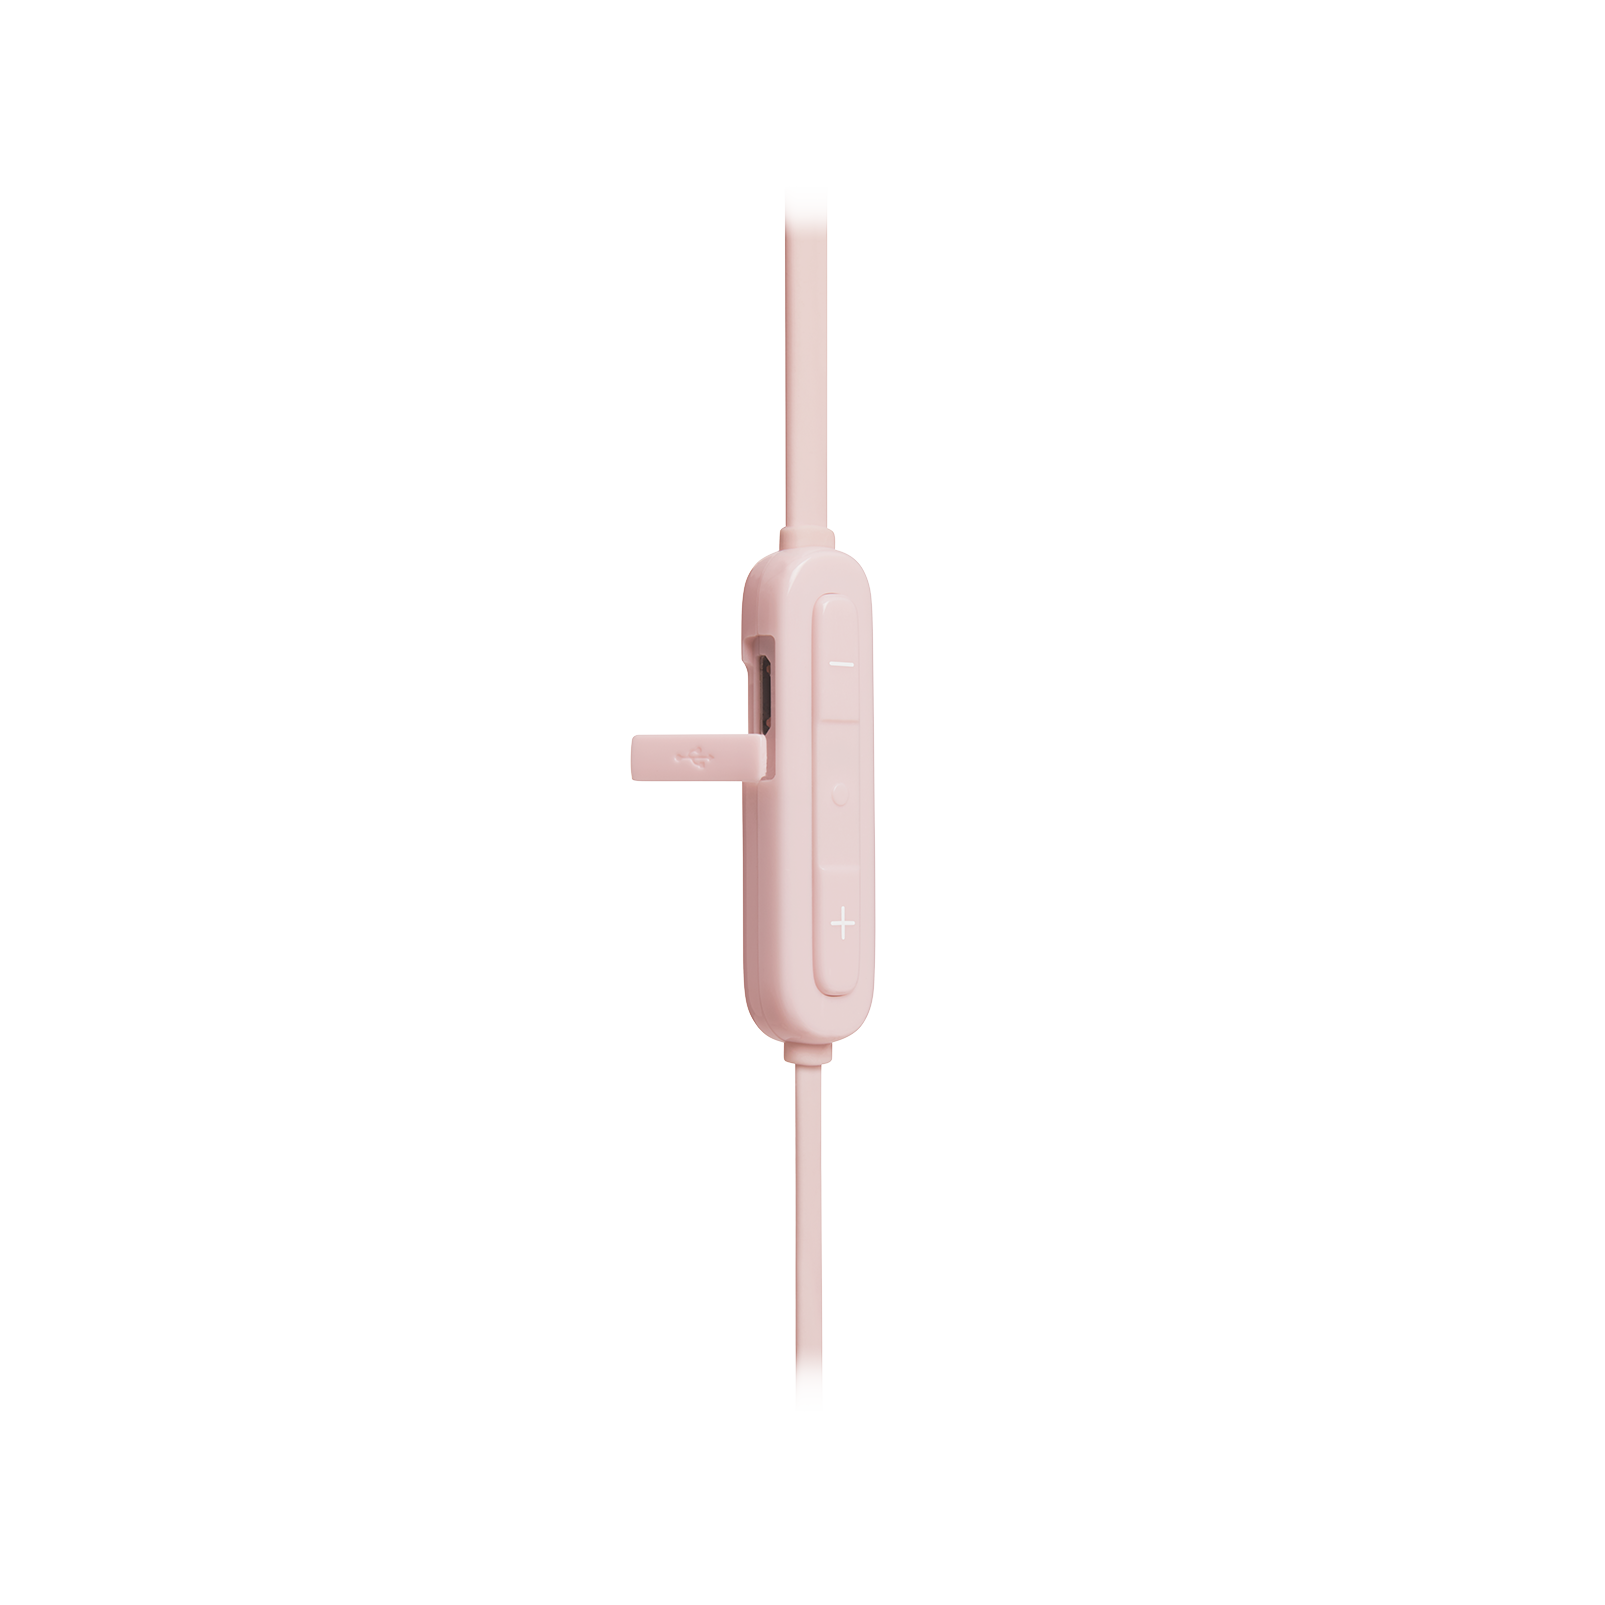 JBL Tune 110BT - Pink - Wireless in-ear headphones - Detailshot 2